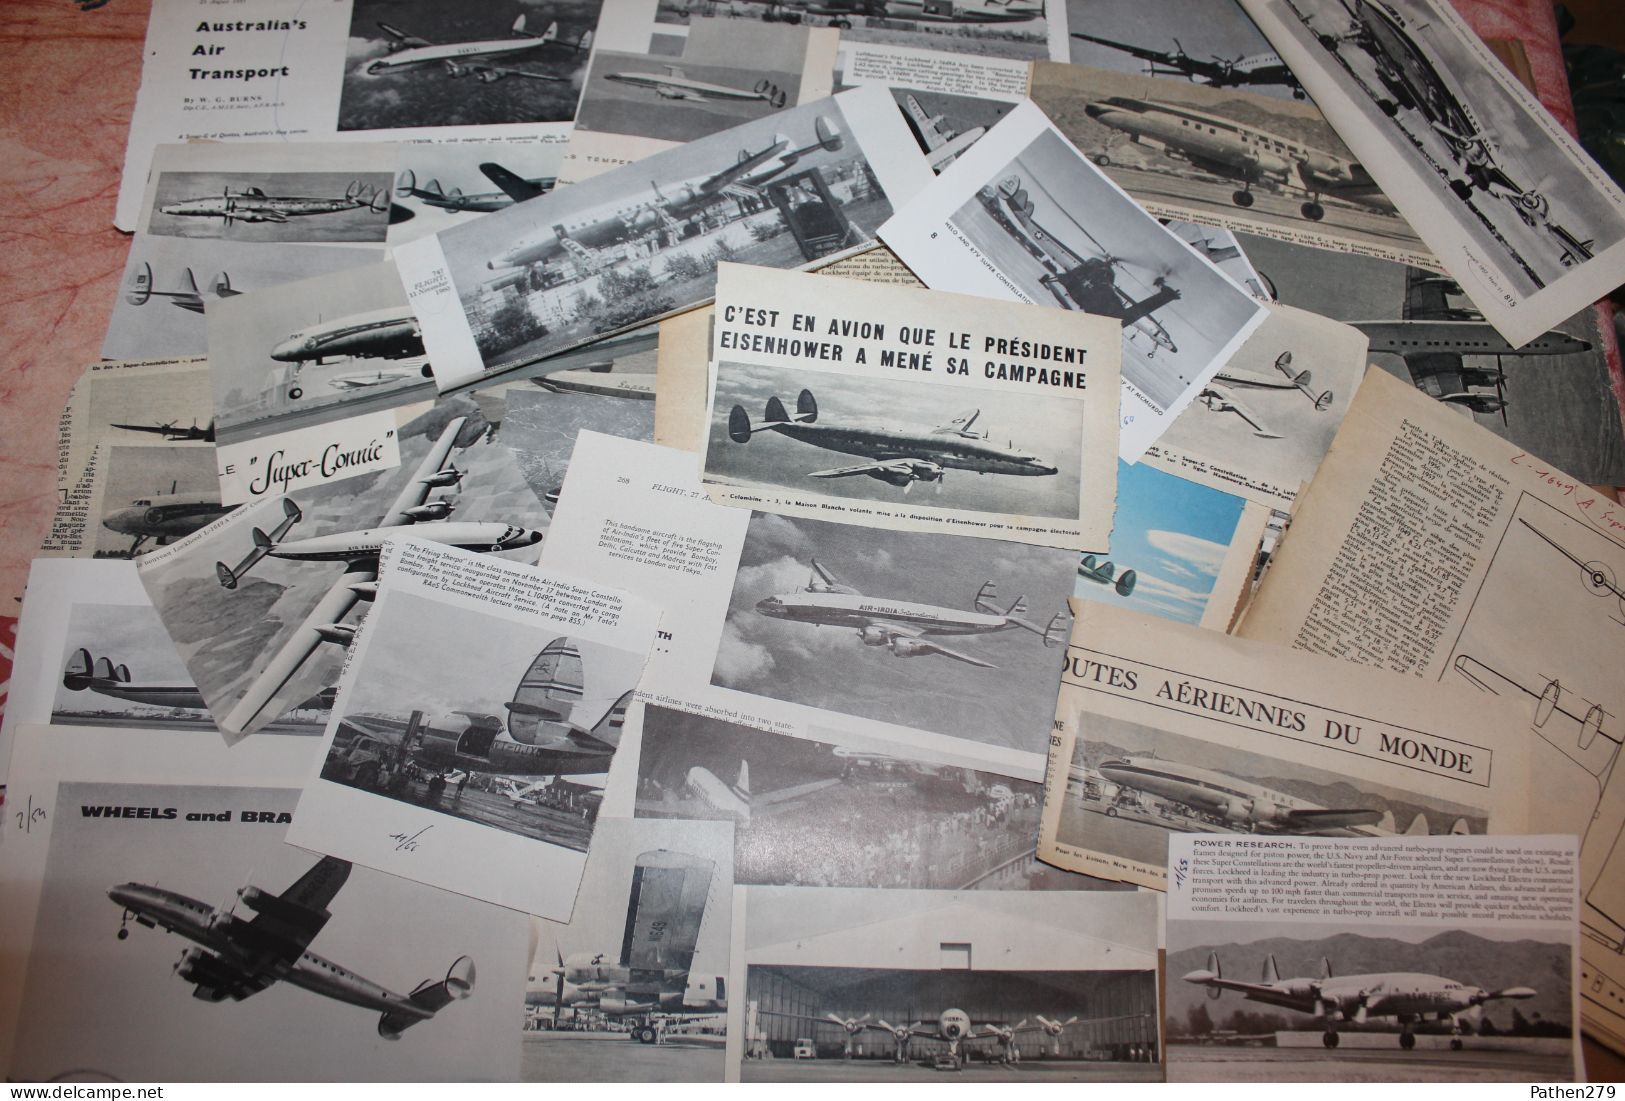 Lot de 362g d'anciennes coupures de presse et photo de l'aéronef américain Lockheed "Super Constellation"